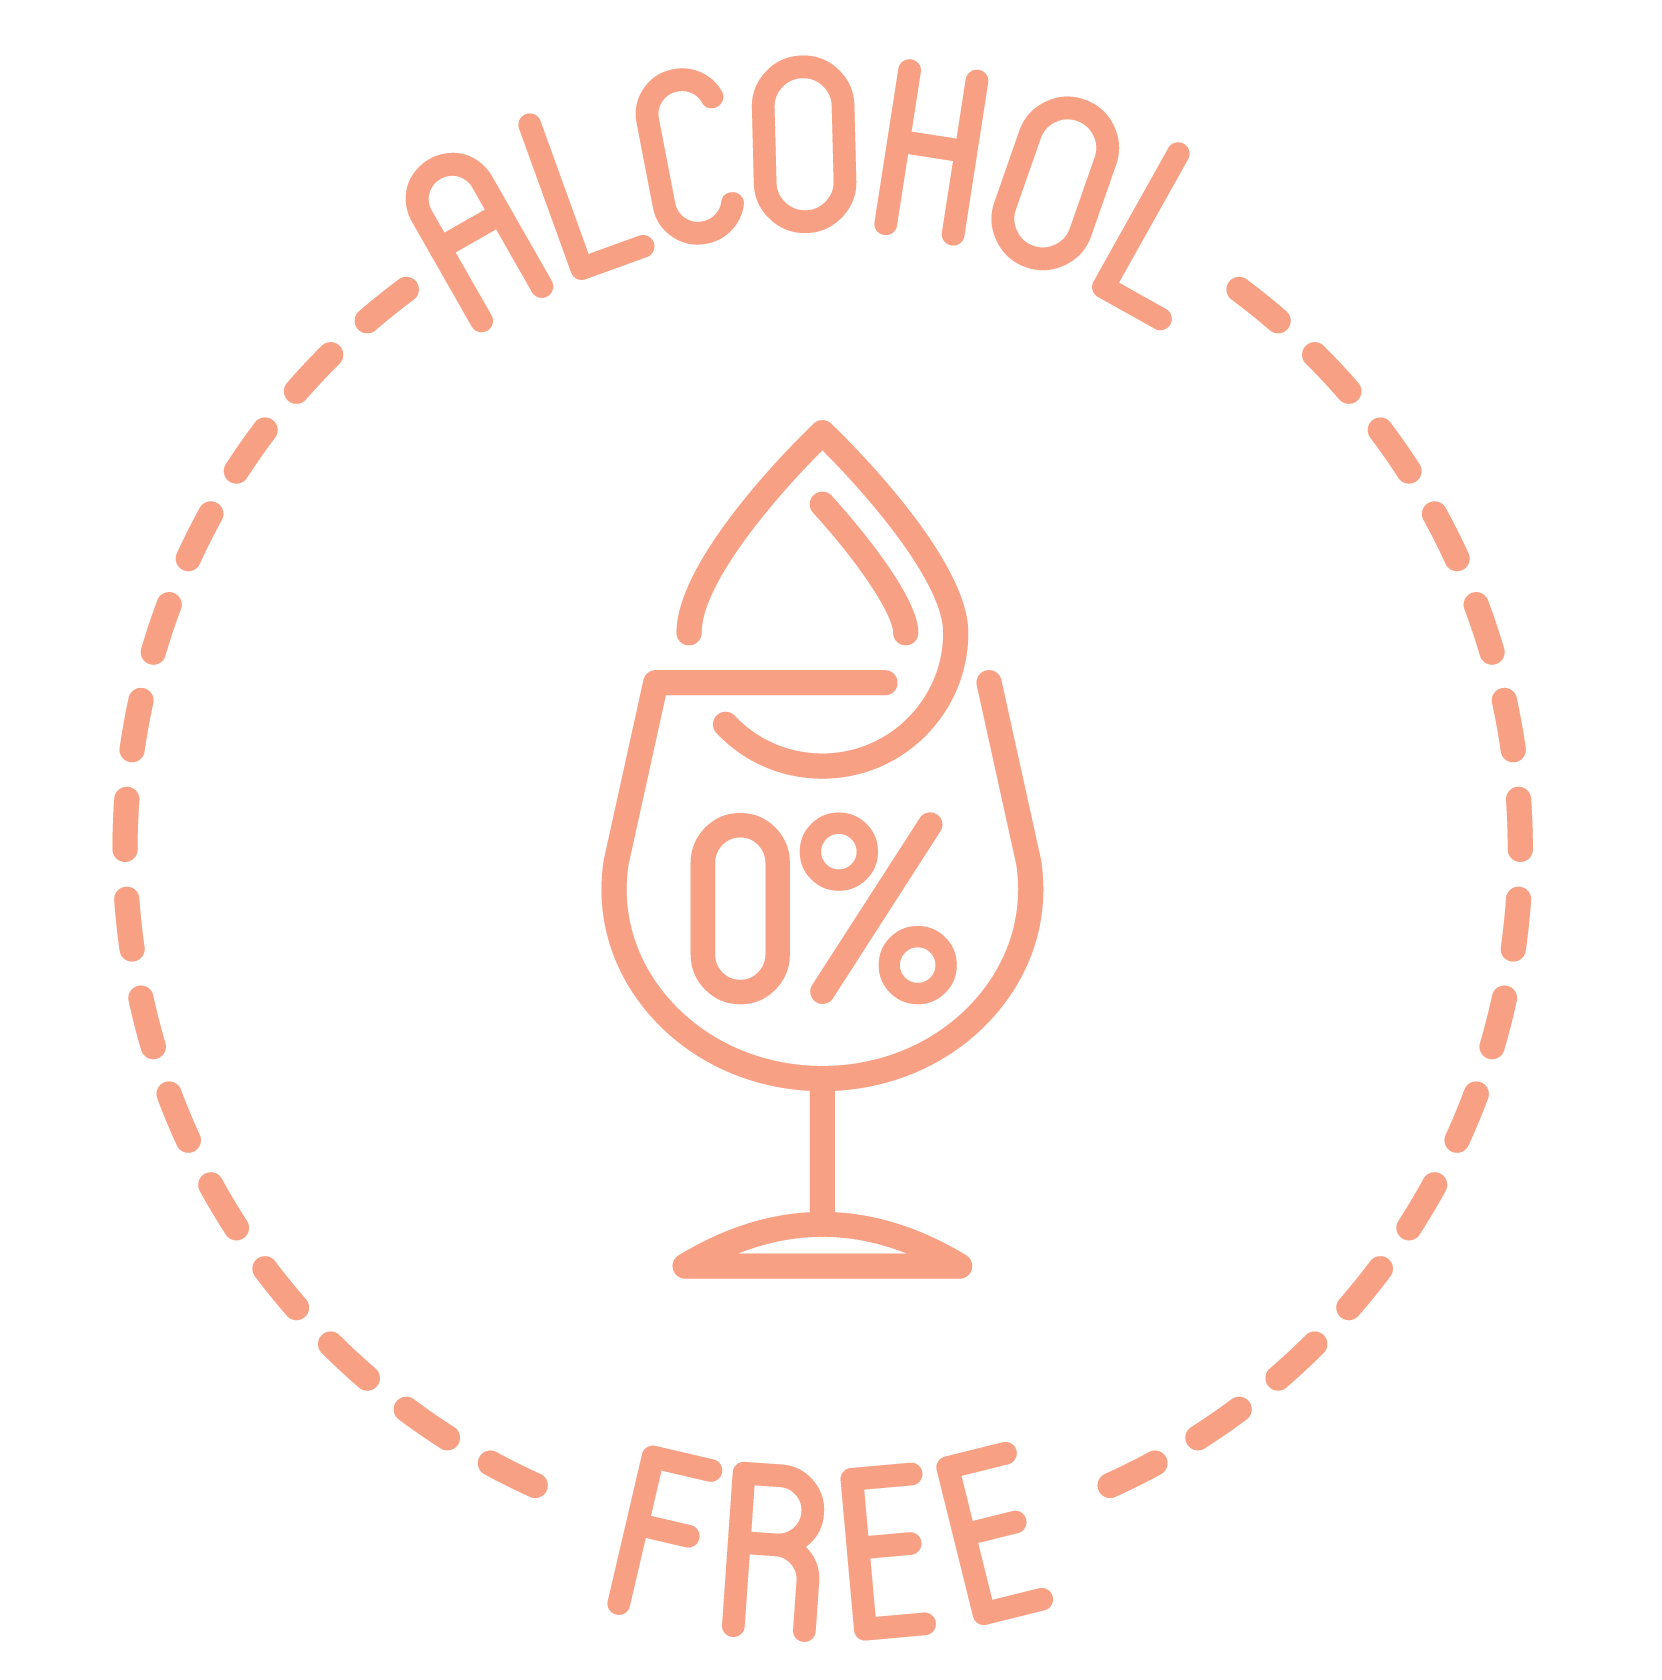 Auf die Zugabe von Alkohol in unseren Produkten wird gänzlich verzichtet. Alternativ verwenden wir Konservierungsstoffe rein natürlichen Ursprungs nach Lebensmittelstandard.